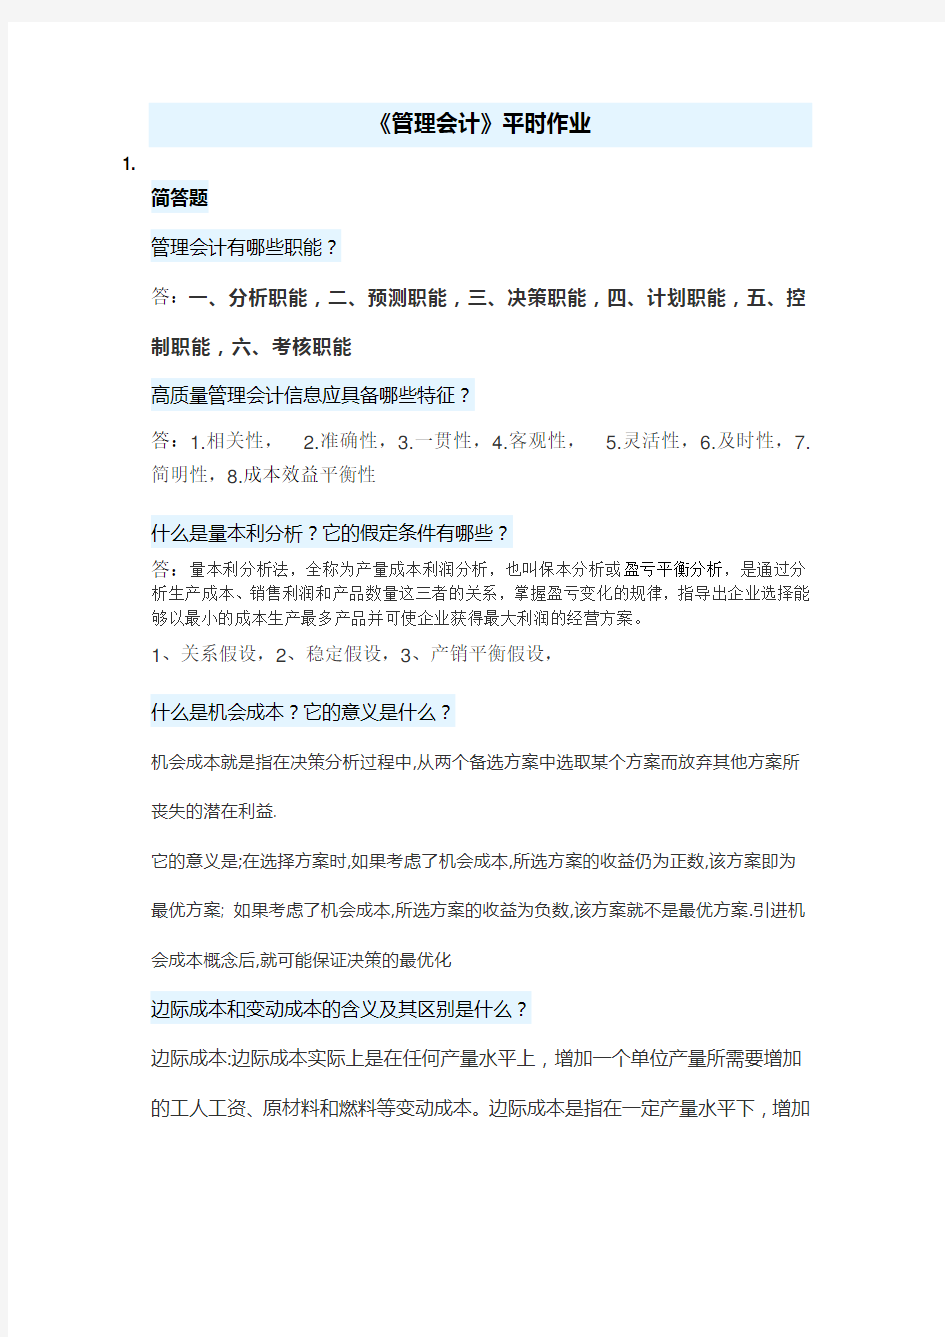 华南理工网络教育《管理会计》平时作业